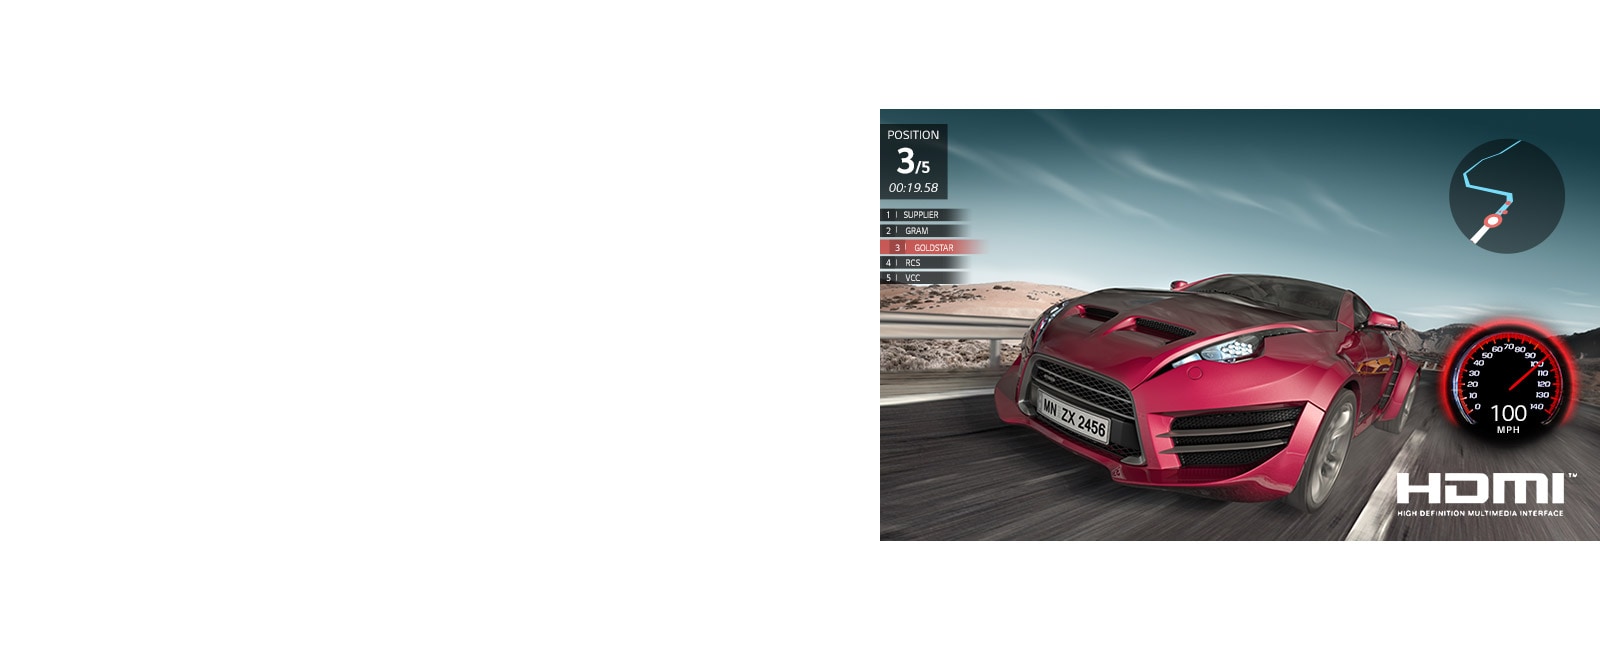 مشهد من لعبة سباق السيارات. تظهر السيارة الحمراء عن قرب في المرتبة الثالثة.